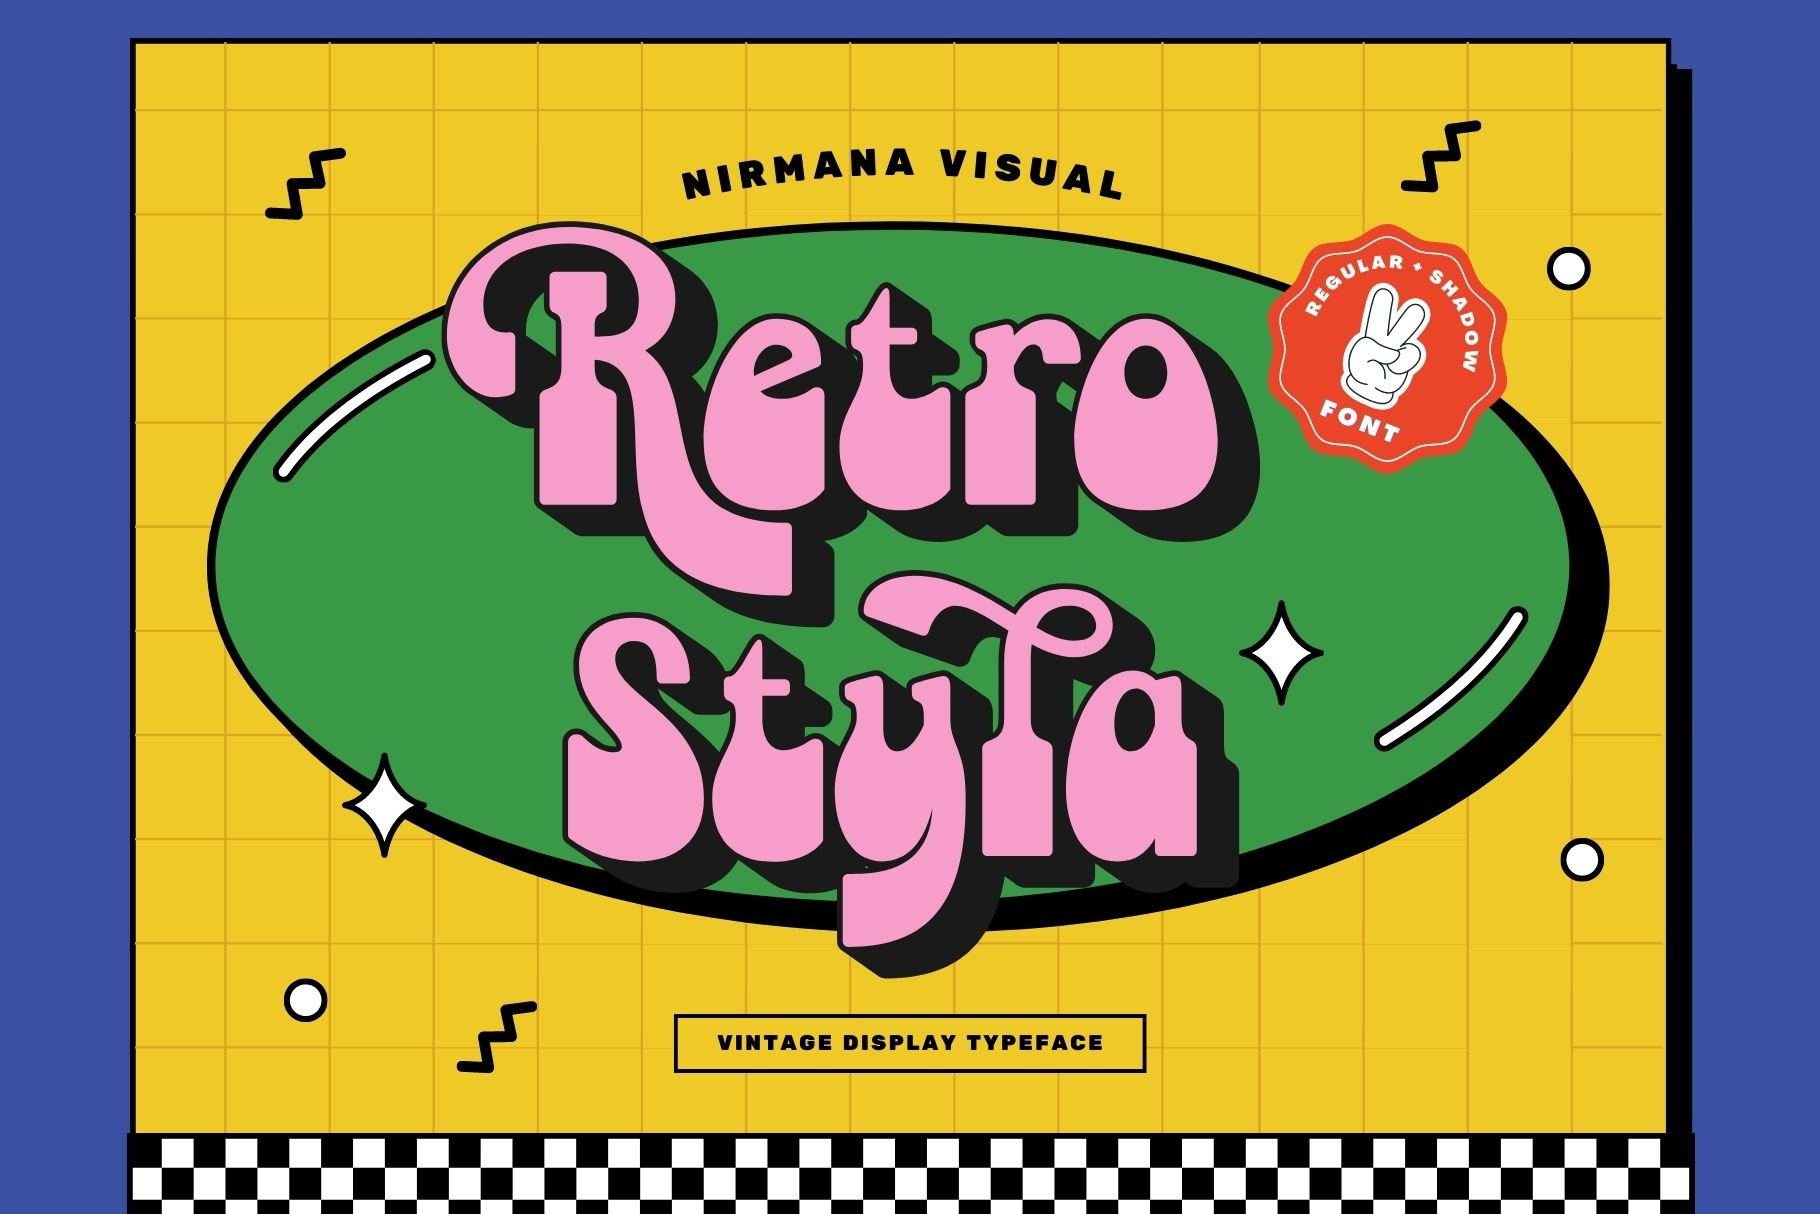 Retro Styla - Retro Font cover image.